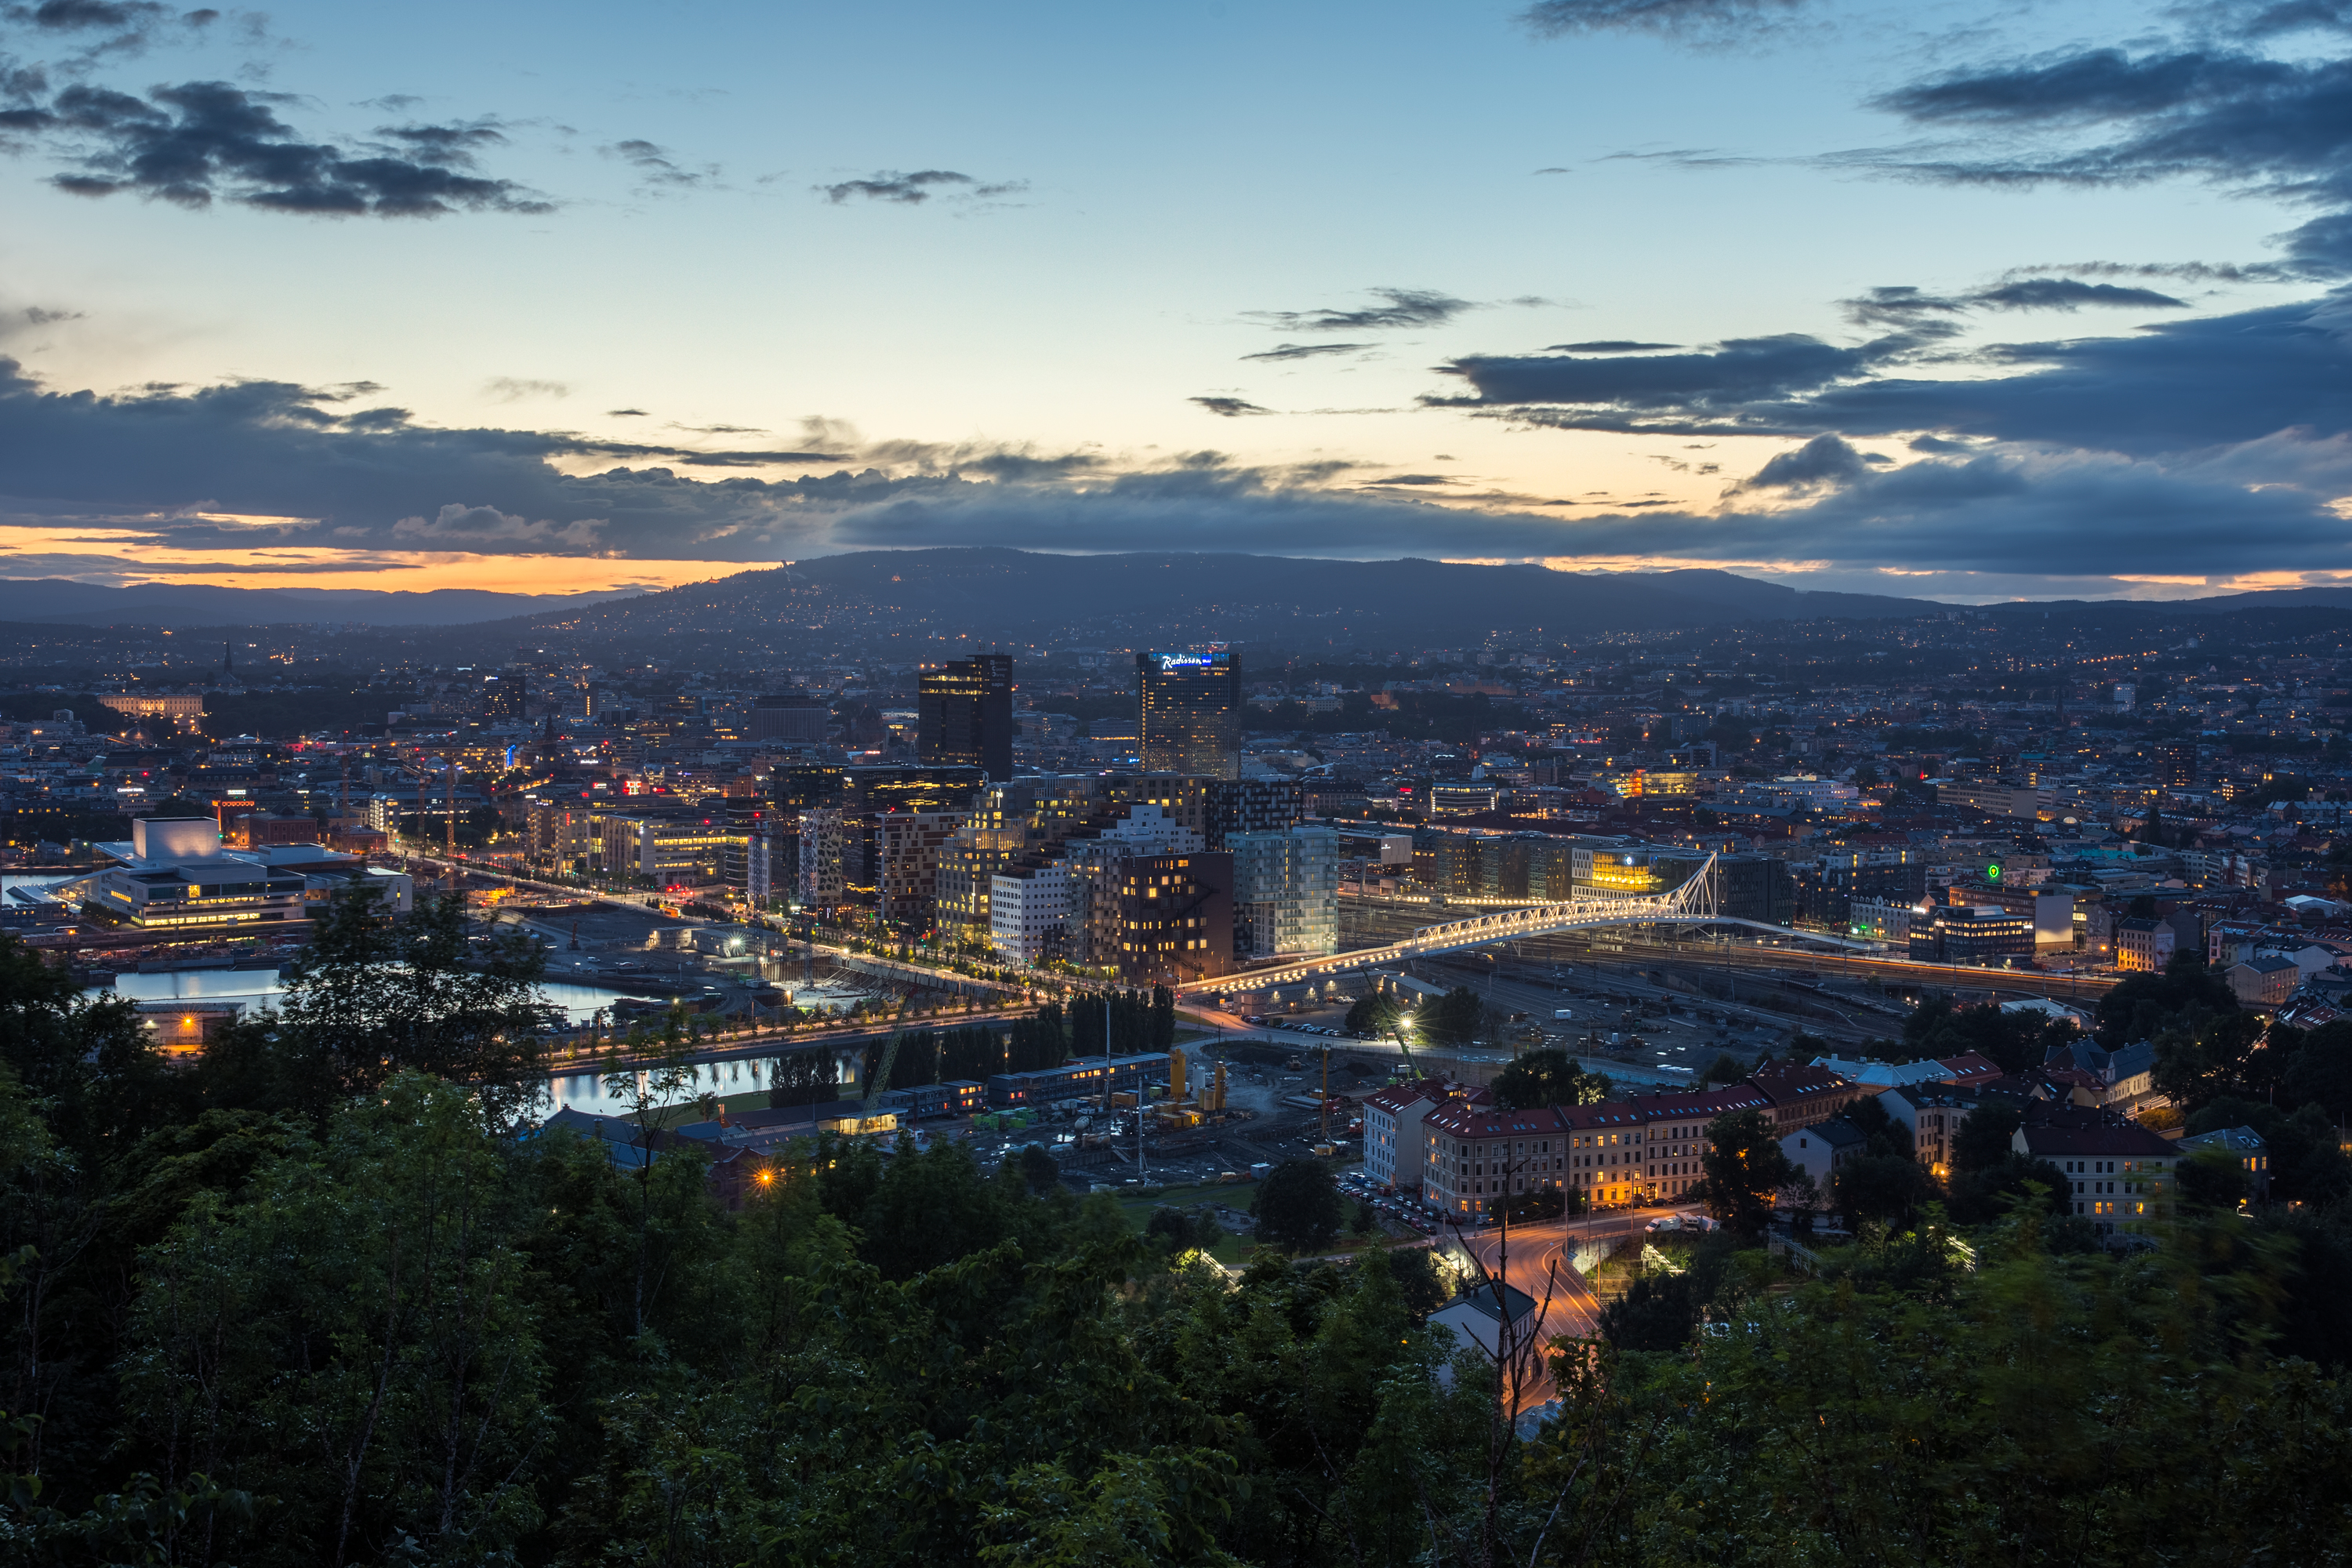 Oslo 1996 – 2016